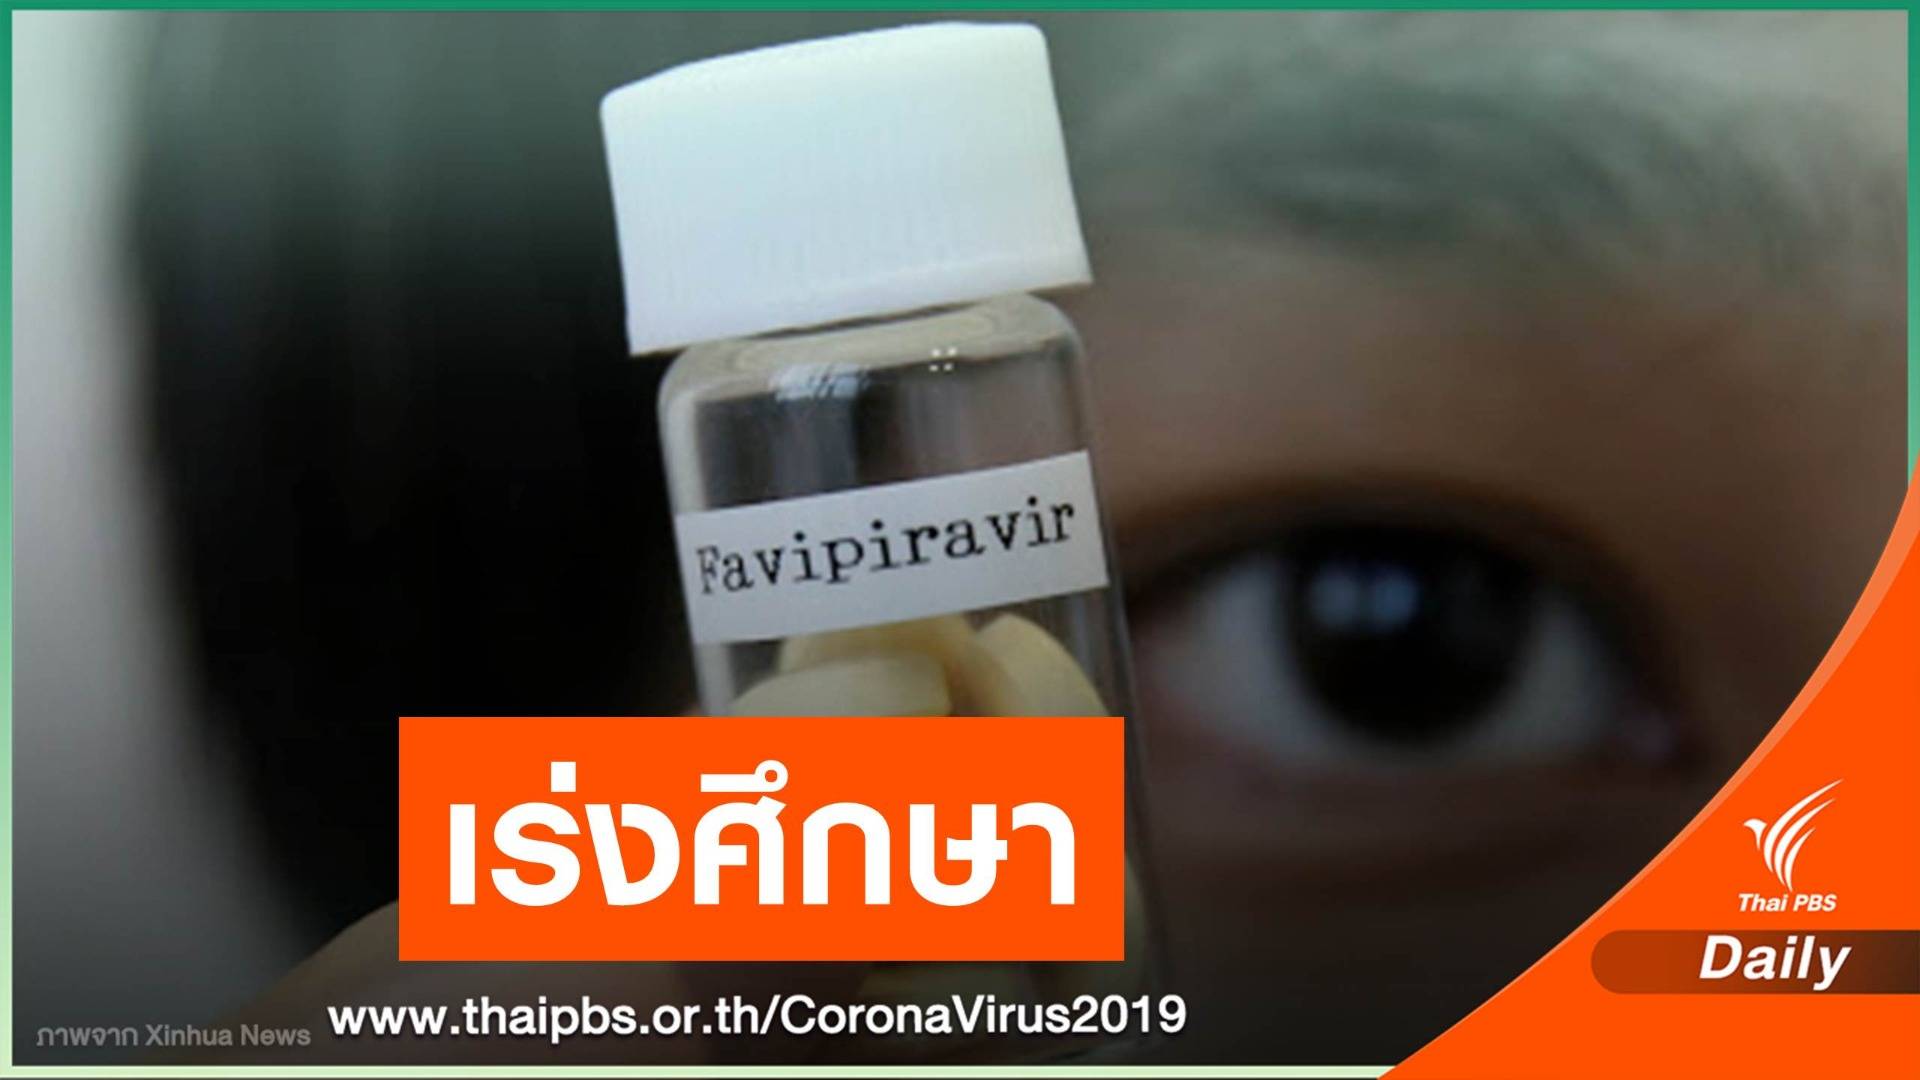 "หมอยง" เปิดรายชื่อยาต้านไวรัสรักษา COVID-19 ทั่วโลกยังรอผล